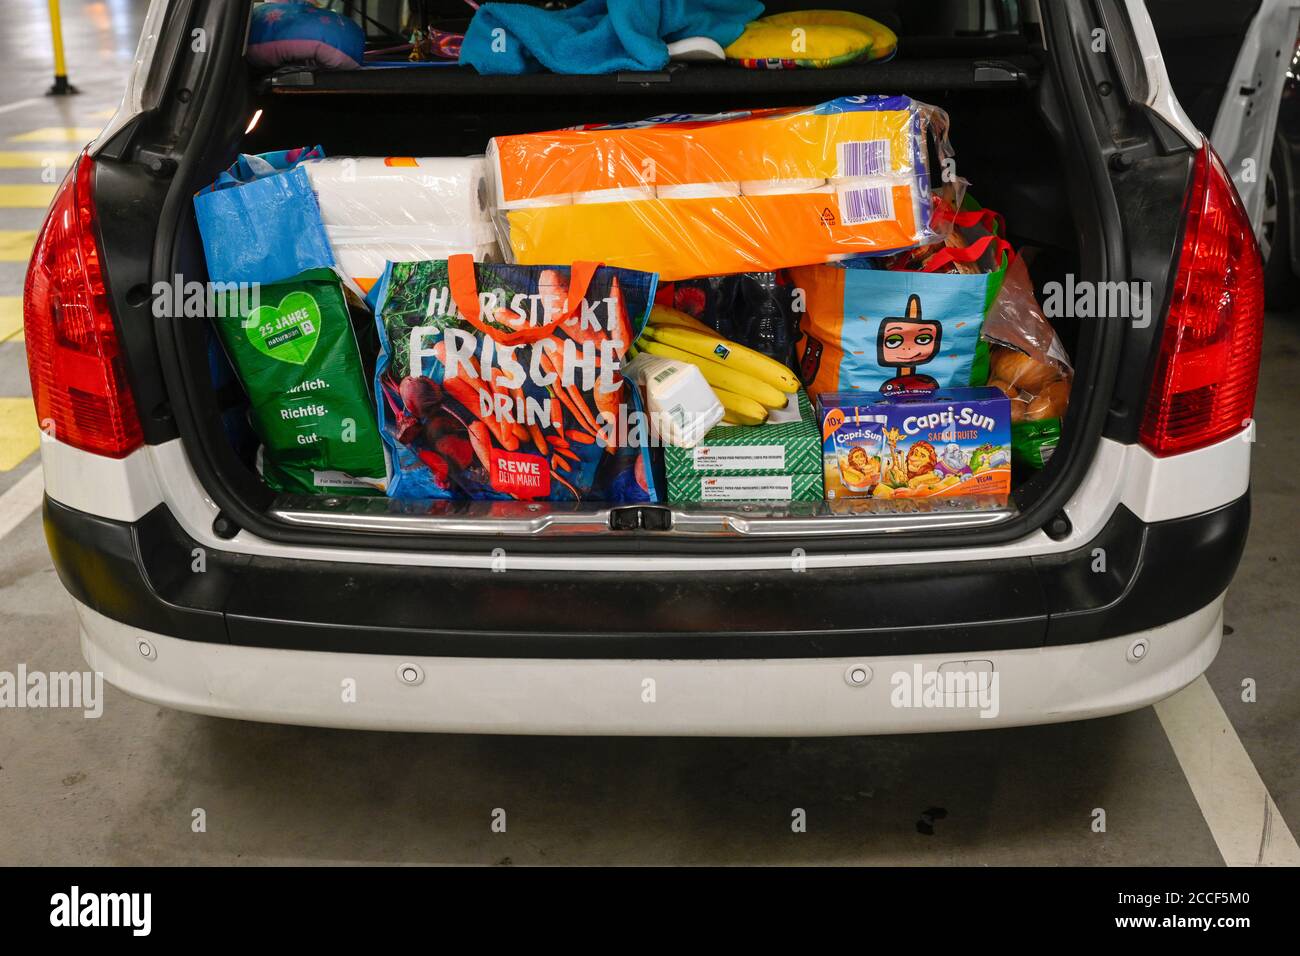 Gemüse im Korb im Kofferraum von SUV Stockfotografie - Alamy